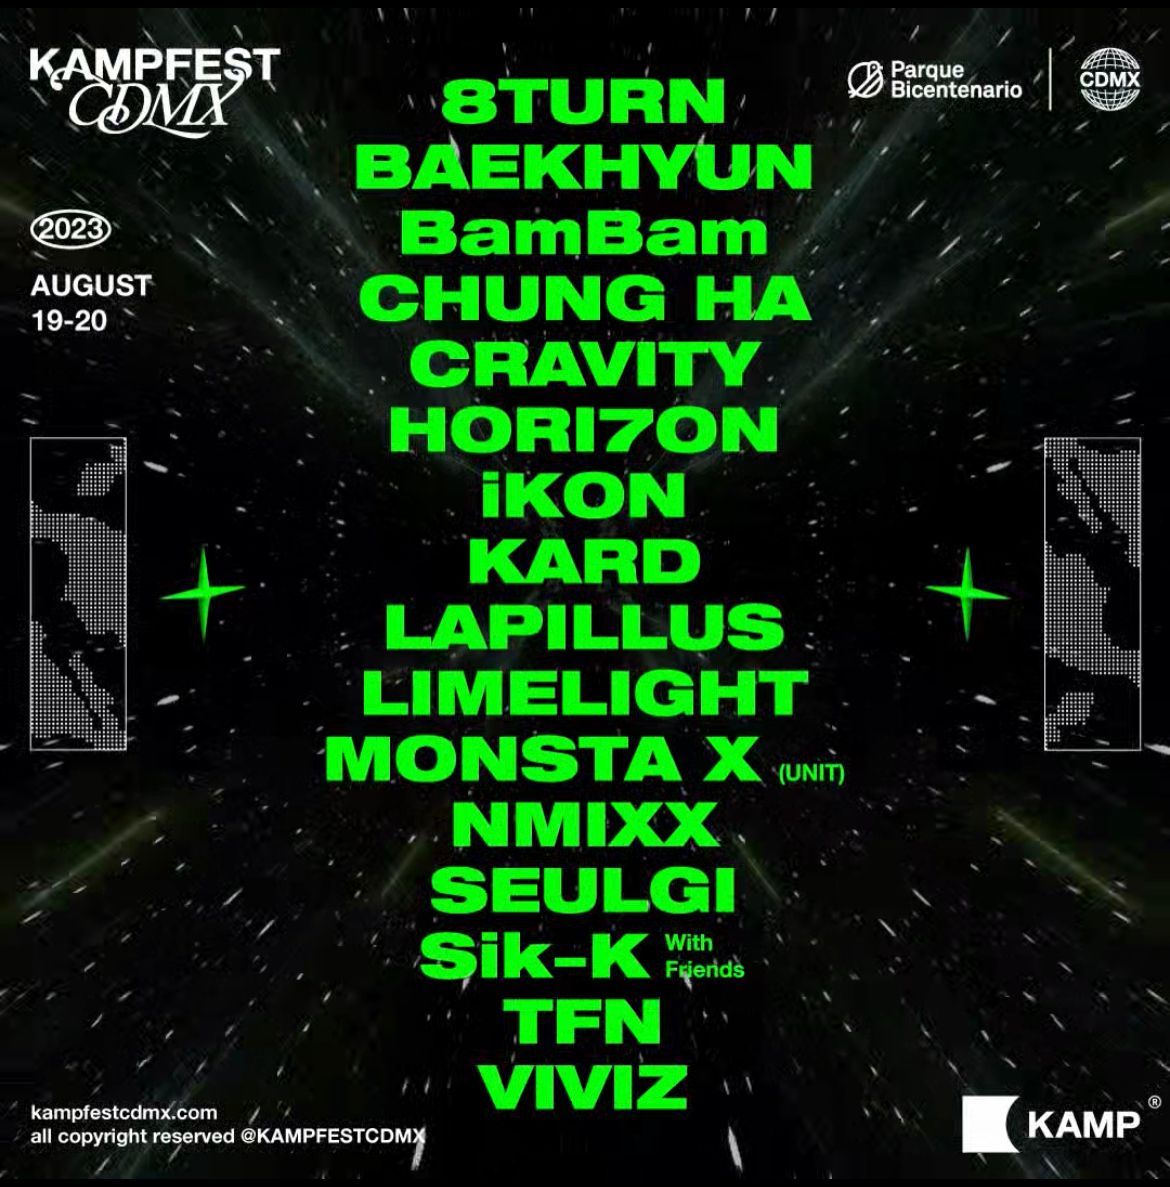 Kamp Fest, el festival más importante de K-Pop llega a CDMX por primera vez #regionmx